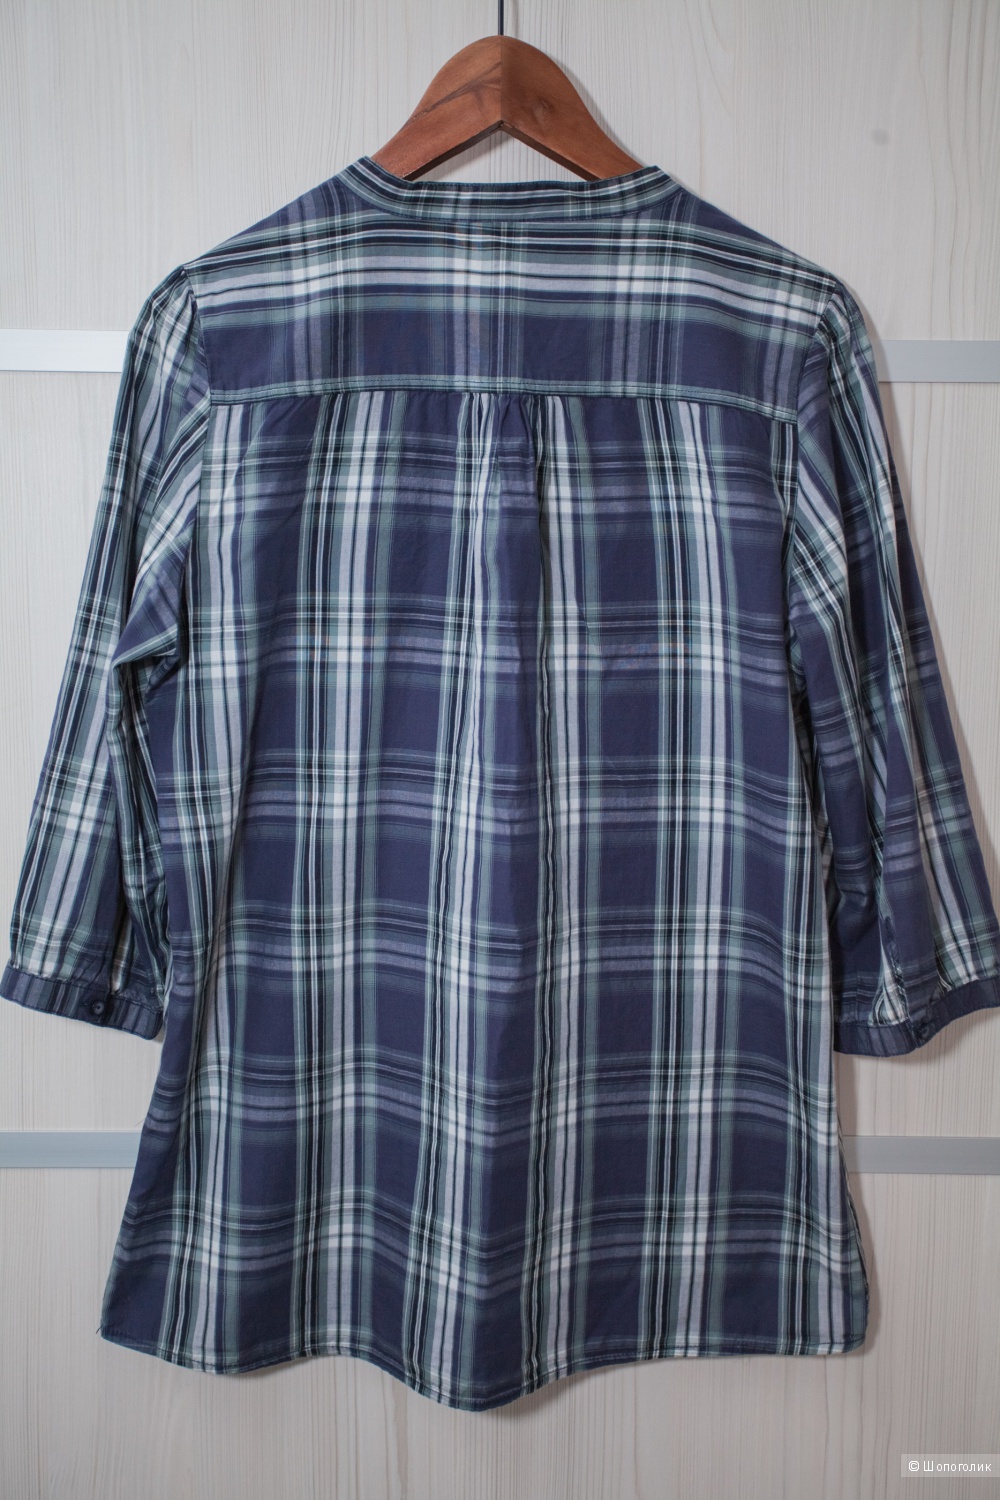 Удлиненная рубашка Only, L, 46-48 размер